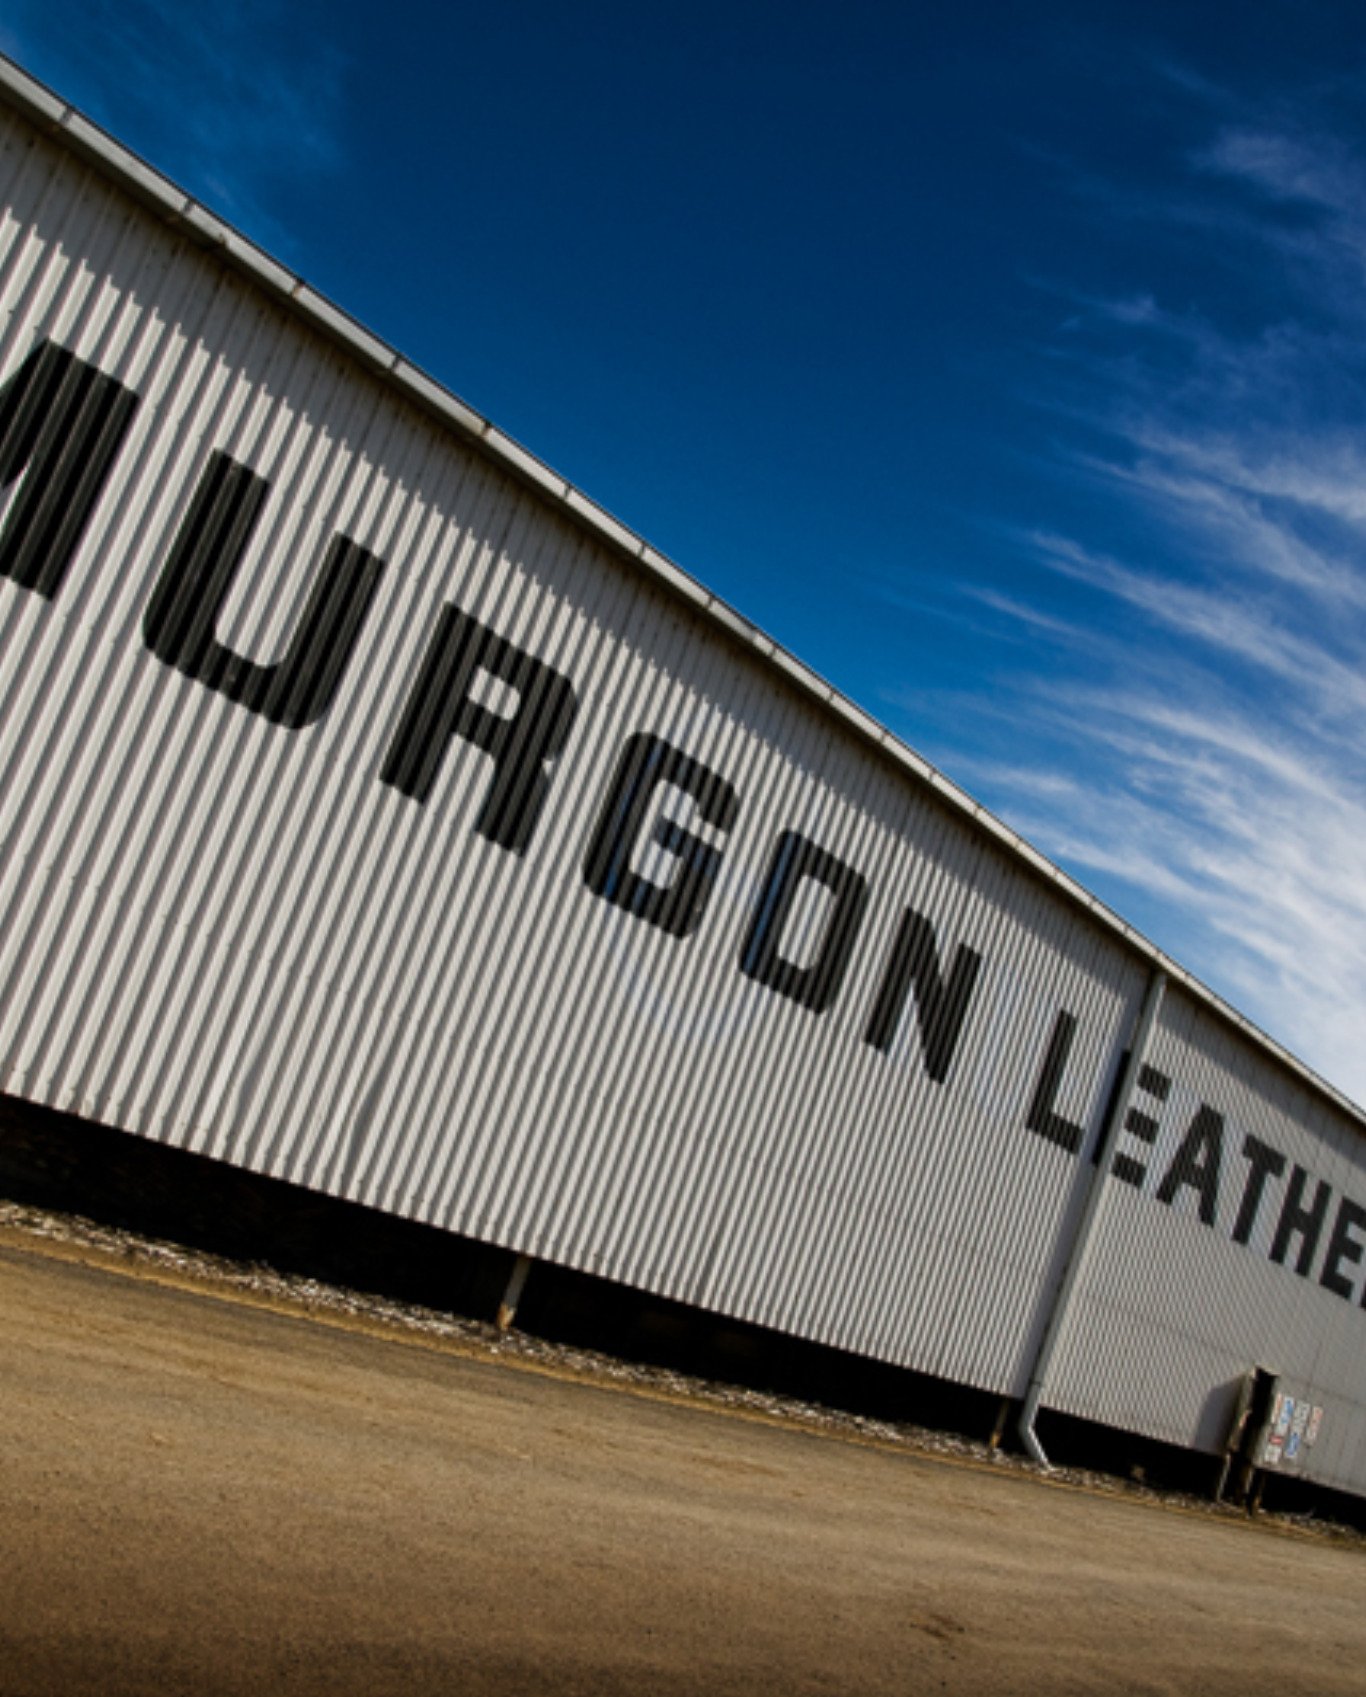 Teys Murgon co product facility